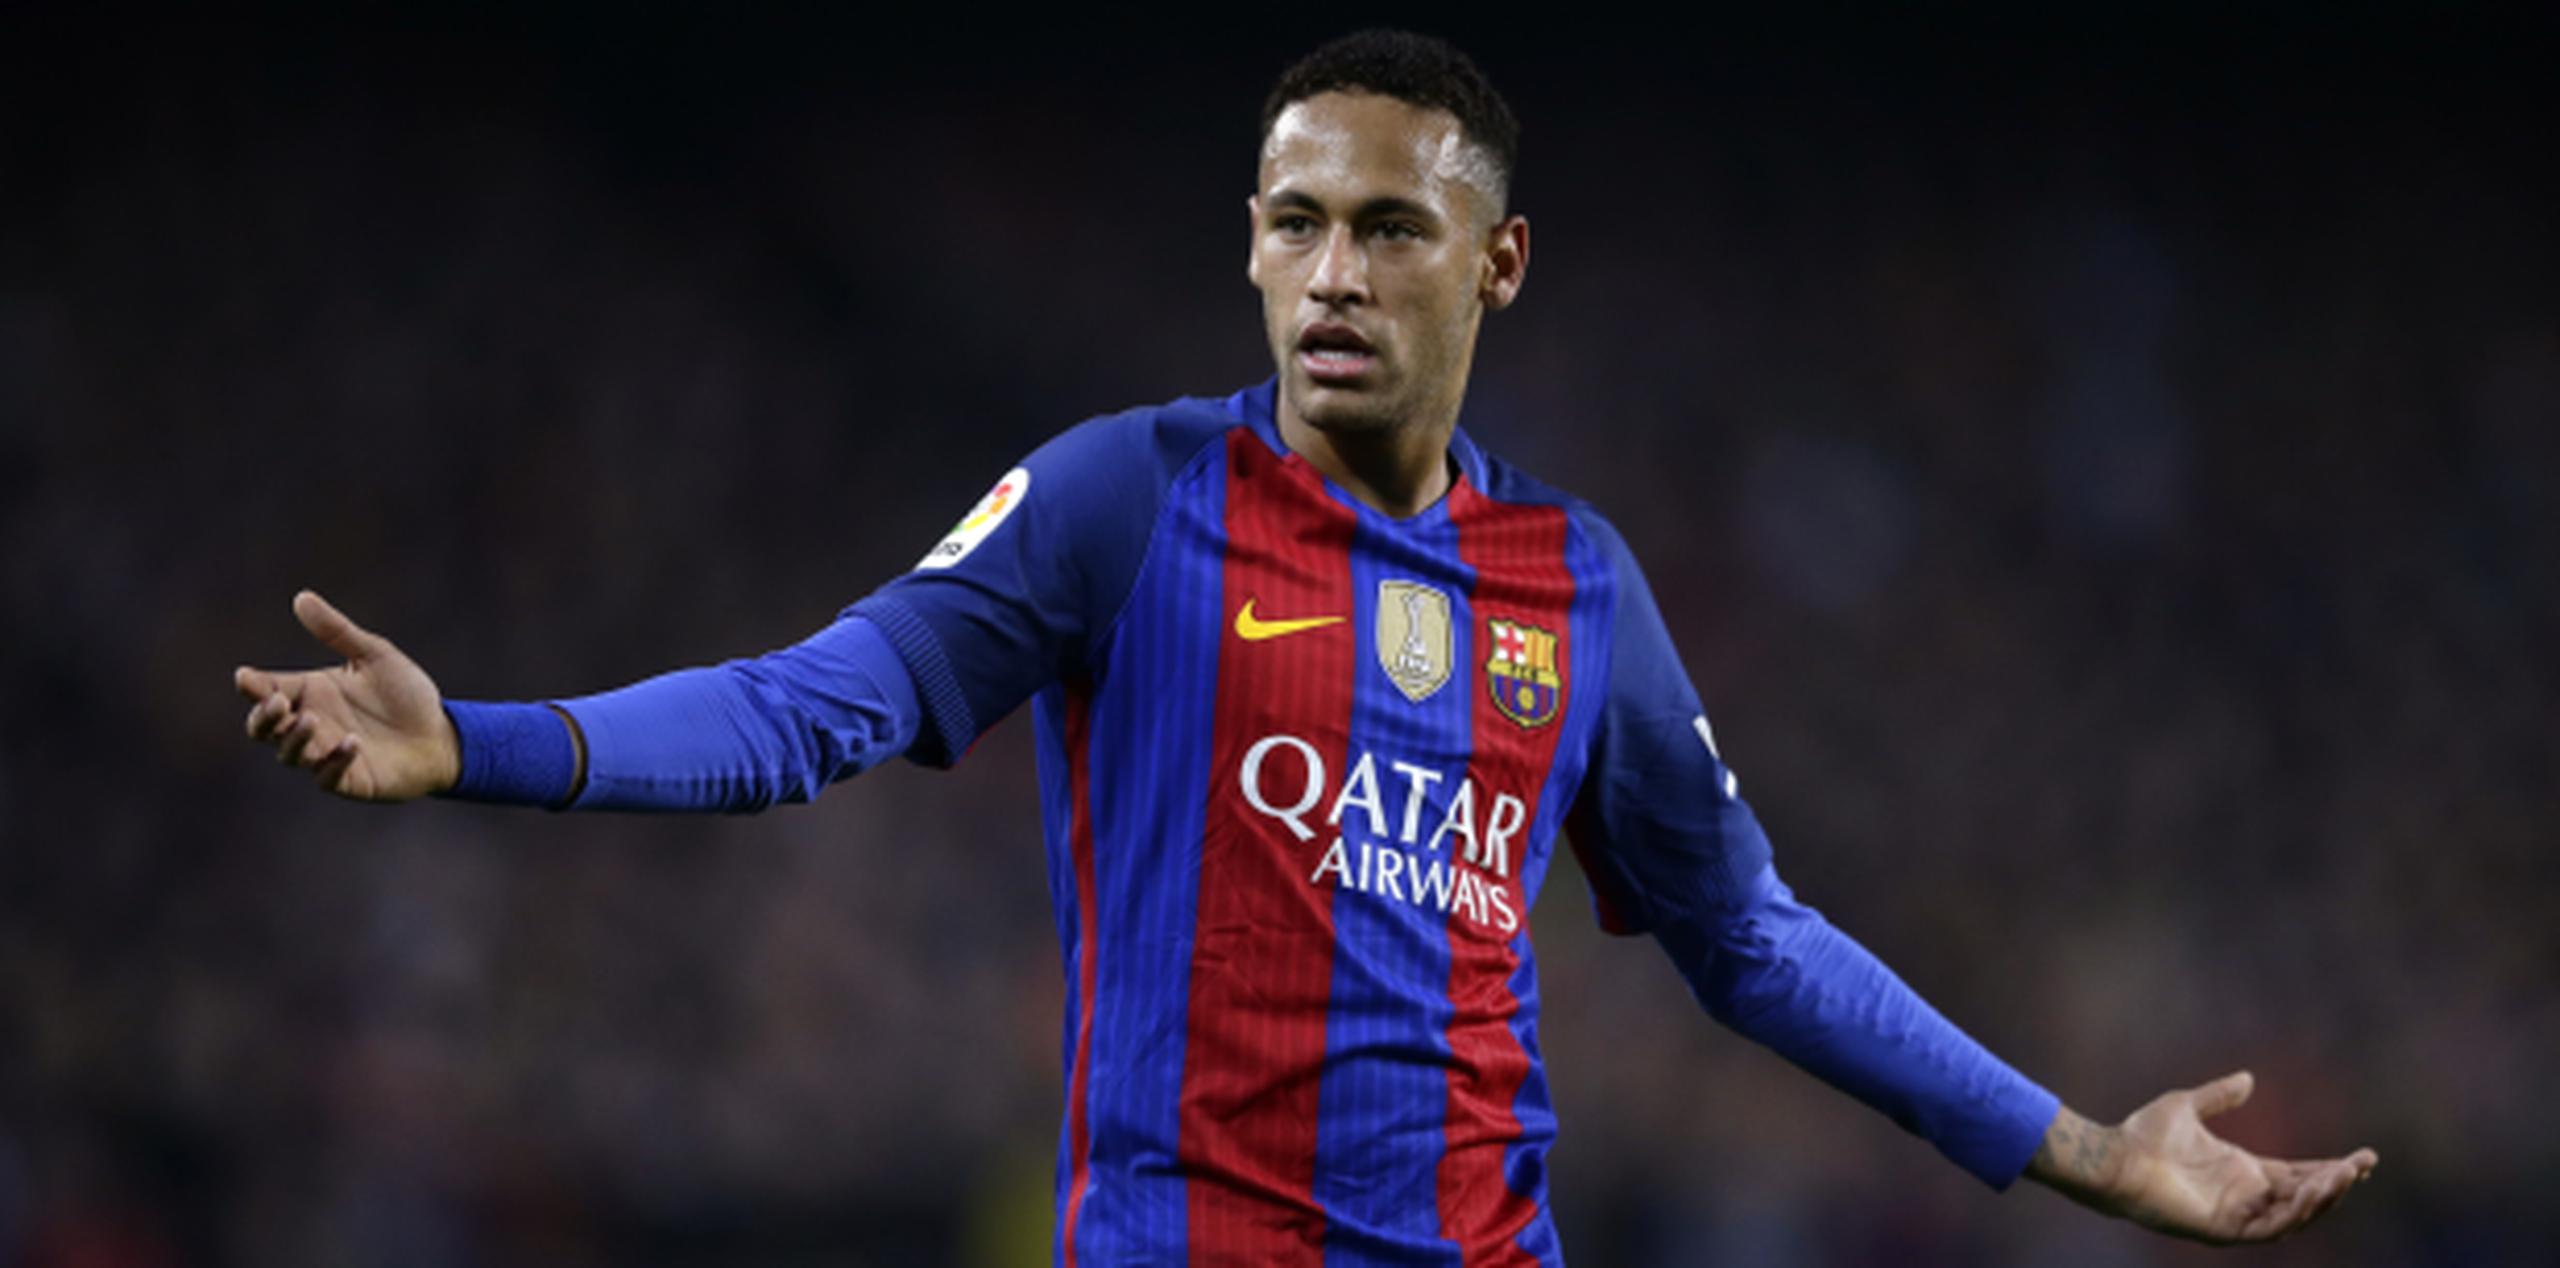 El último gol de Neymar con el club catalán fue en una victoria de 4-0 sobre Manchester City en la Liga de Campeones el 19 de octubre. (Prensa Asociada)